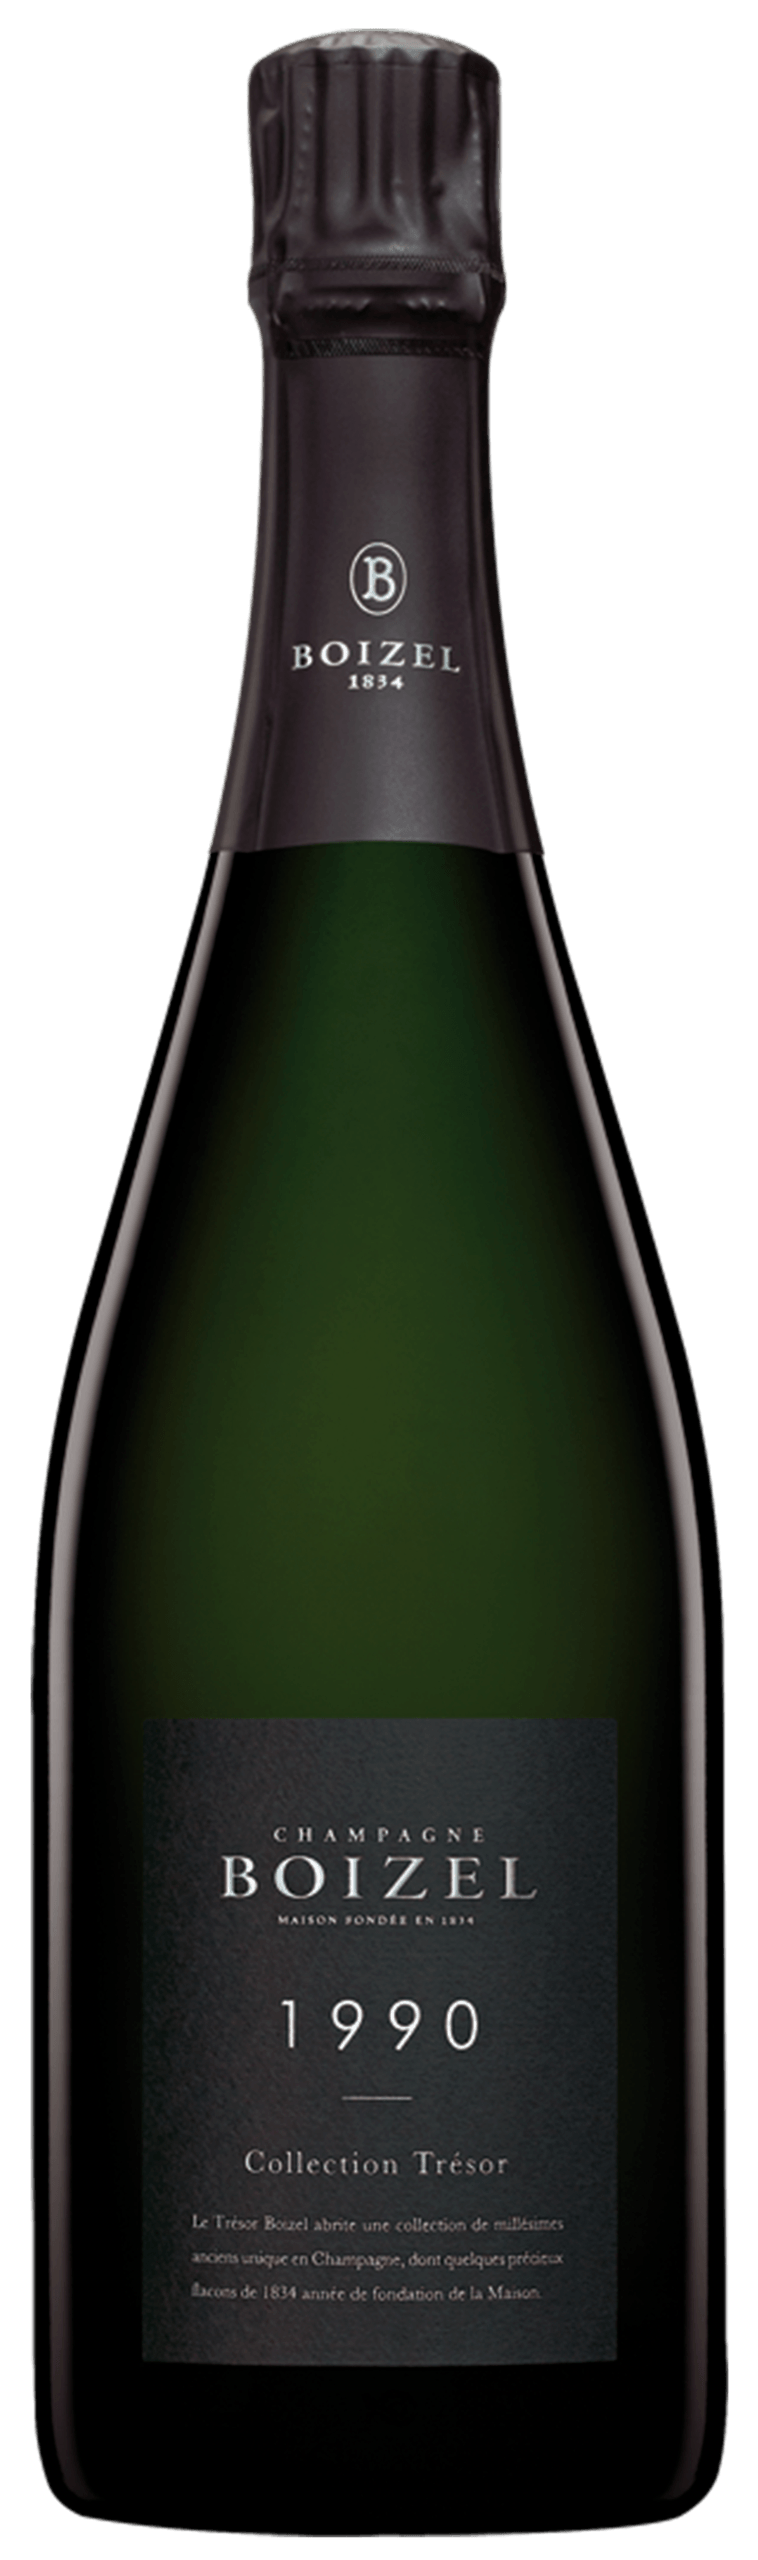 Champagne Boizel Collection Trésor 1990